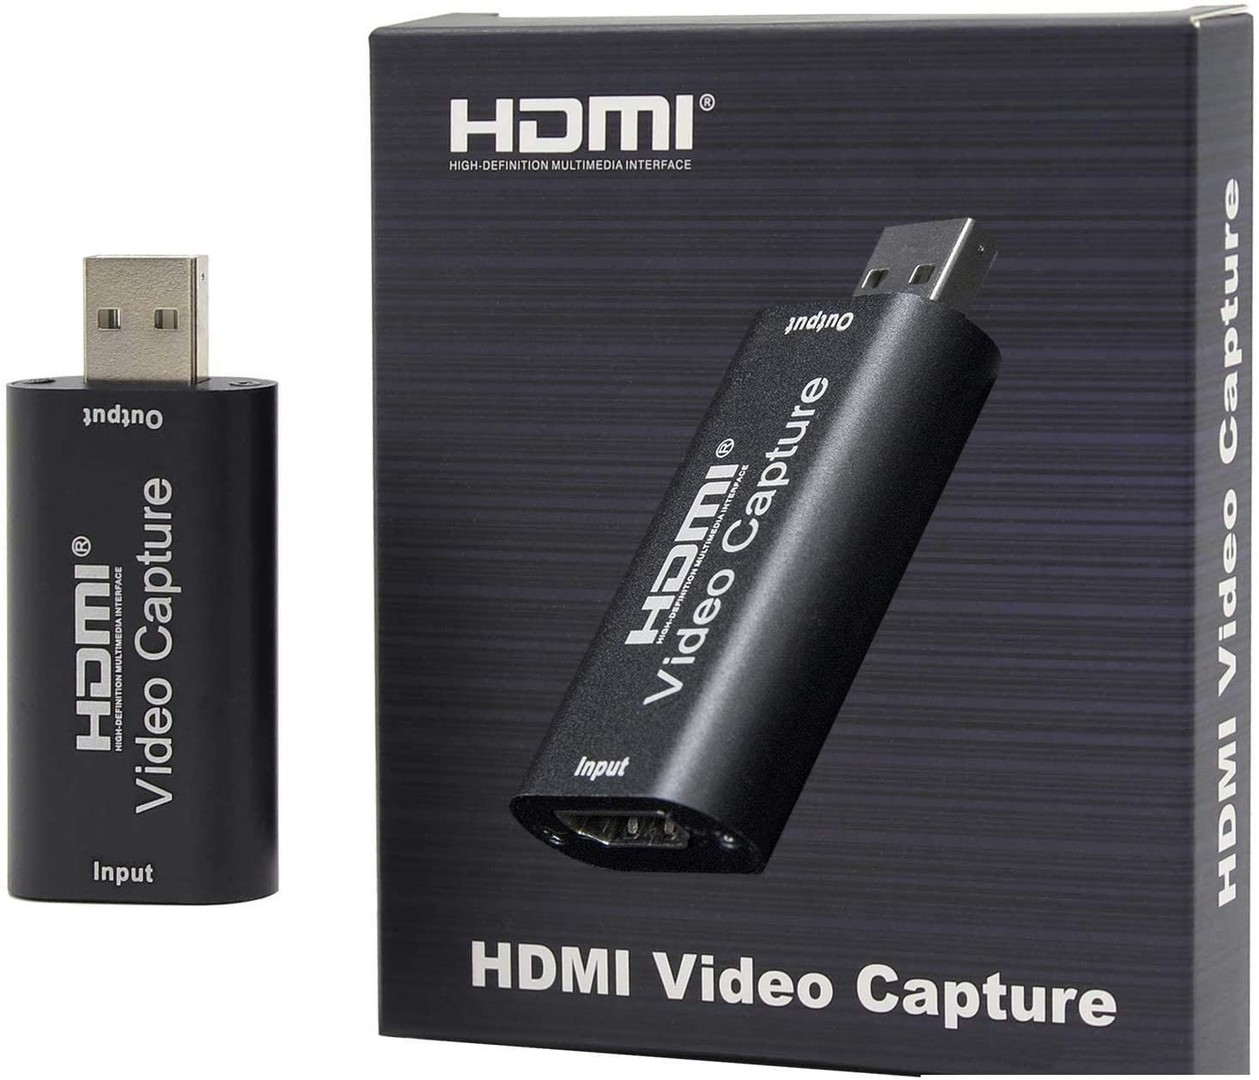 Captura de Video USB 2.0 HDMI 1